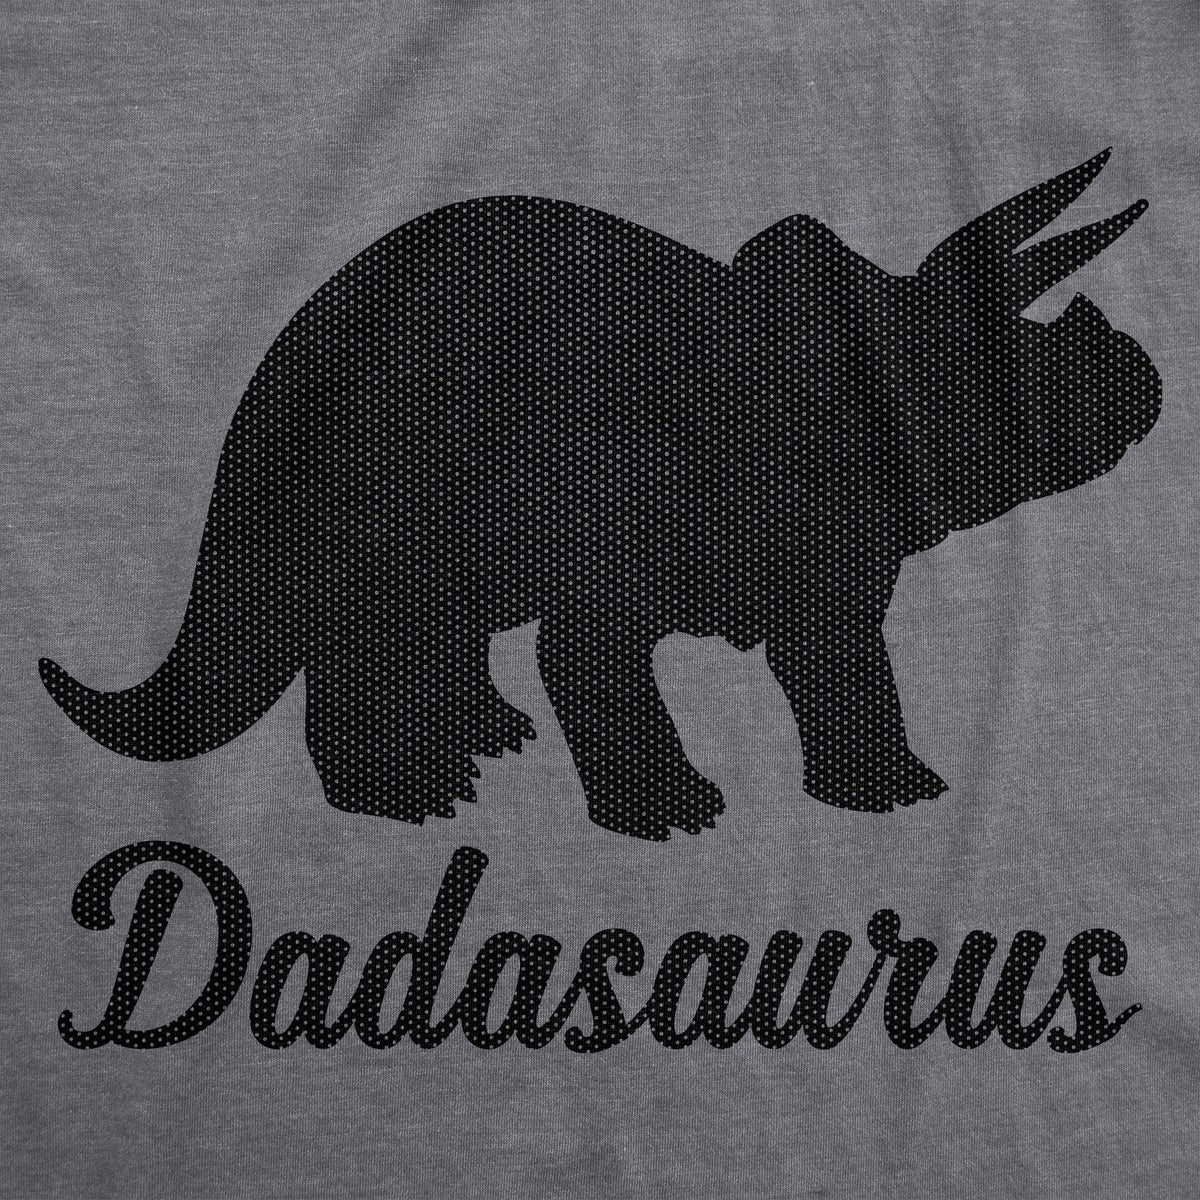 Dadasaurus Men&#39;s T Shirt